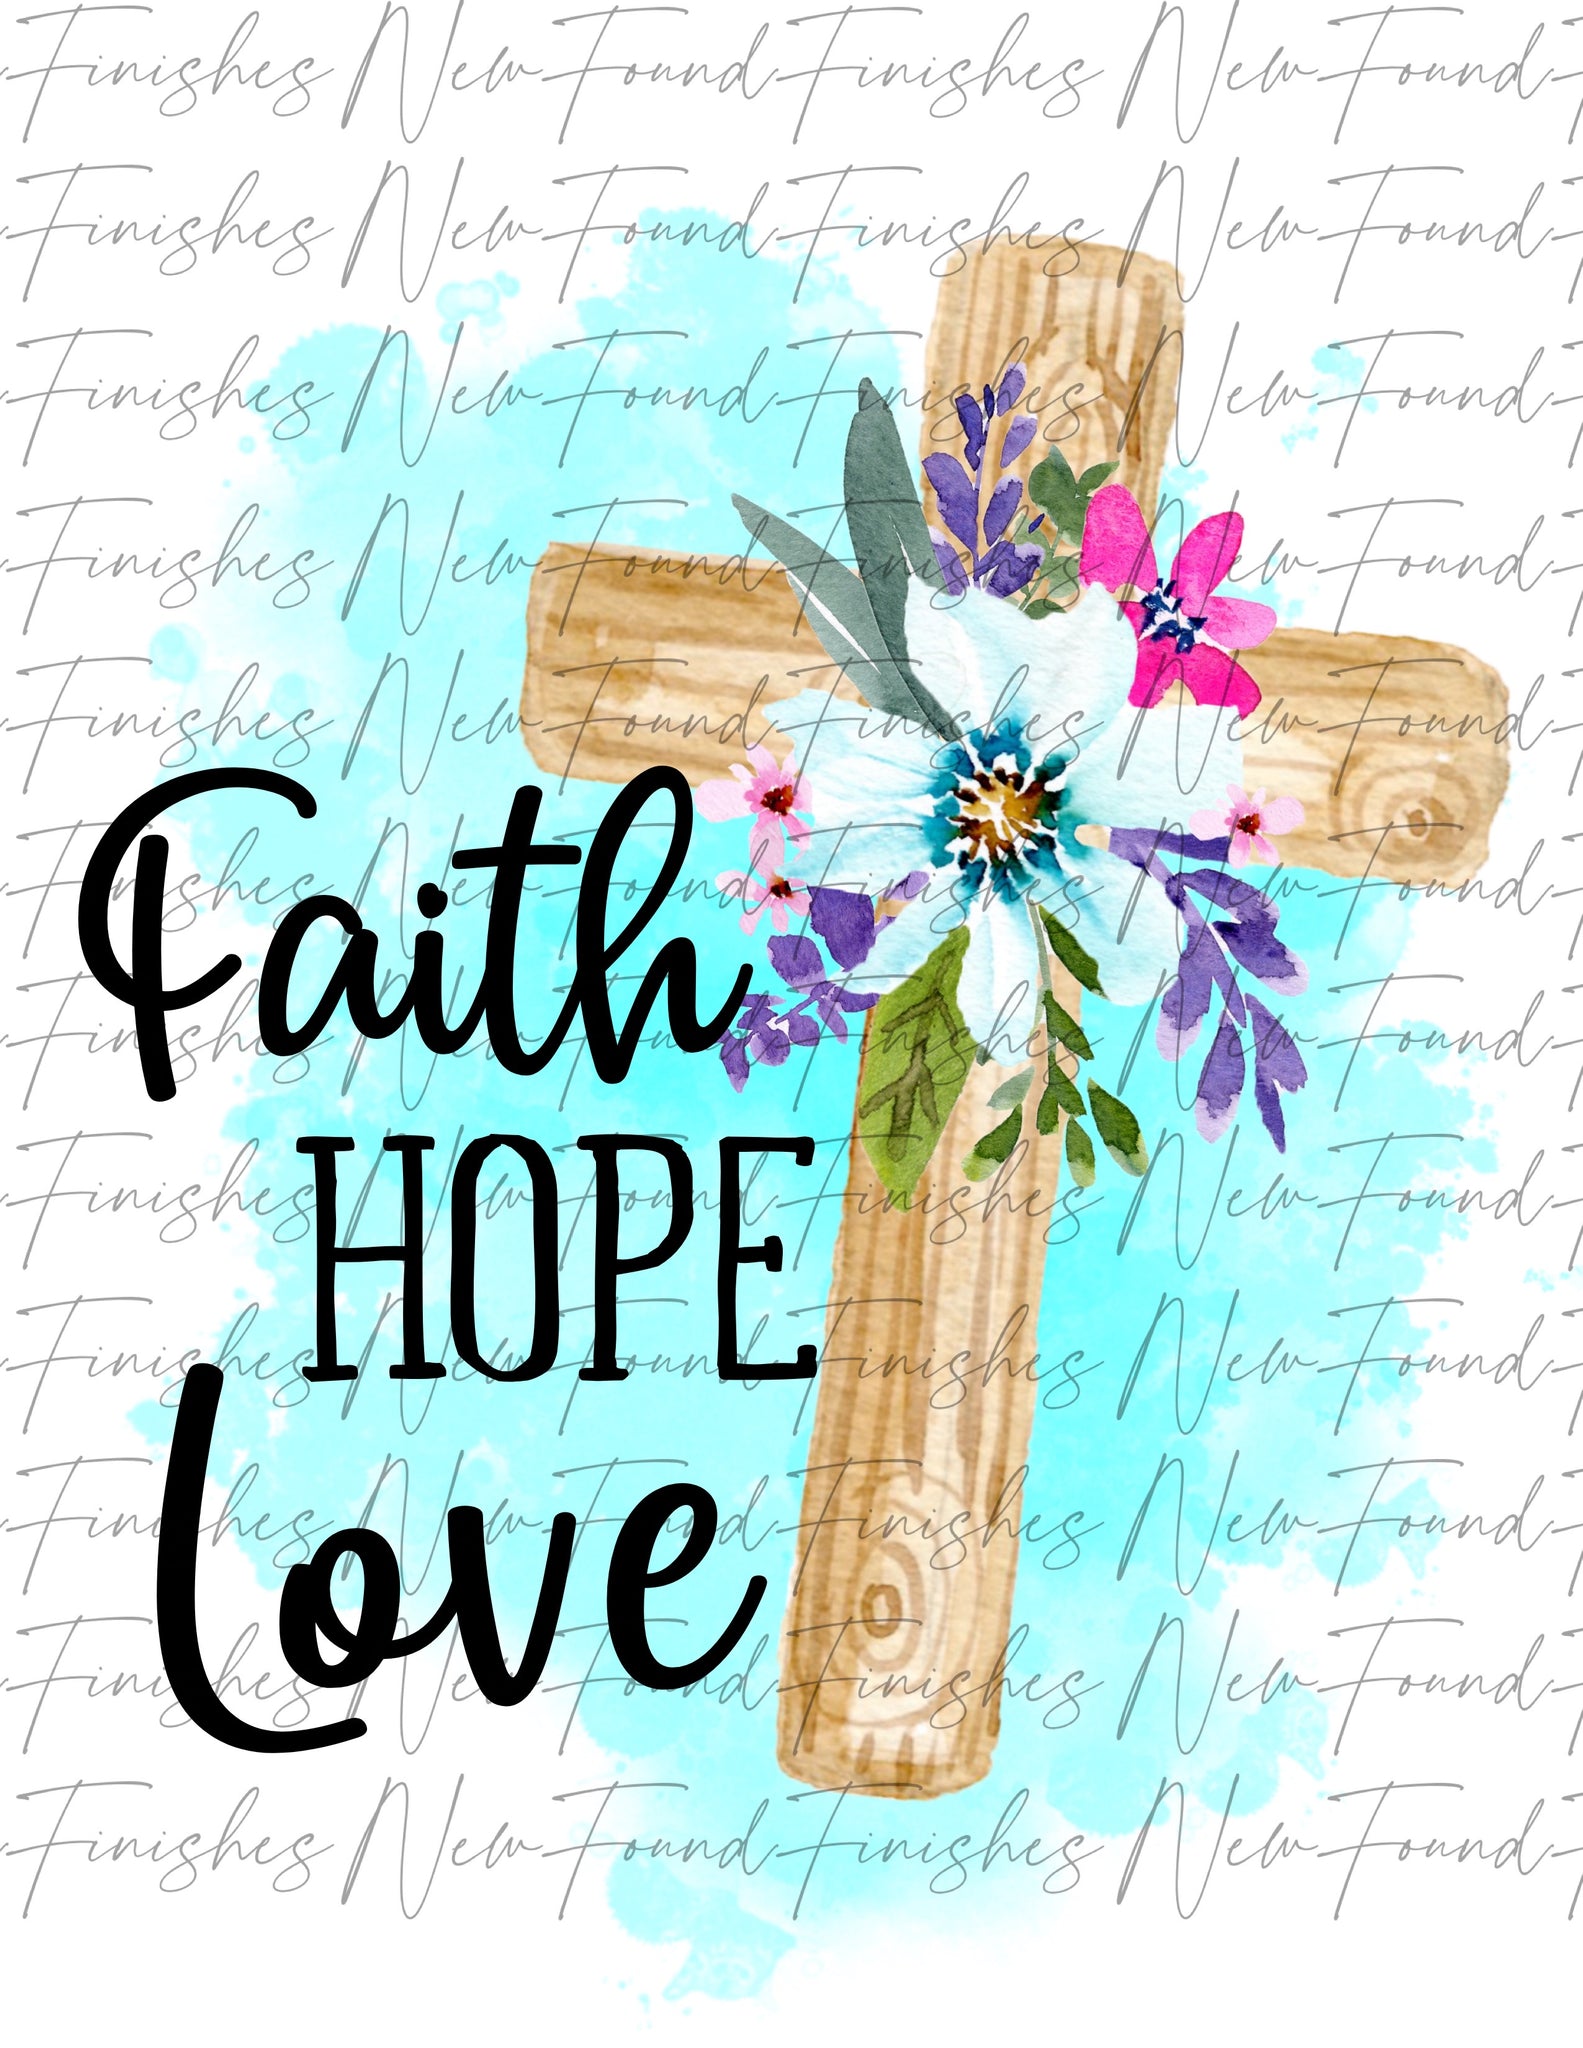 Faith hope